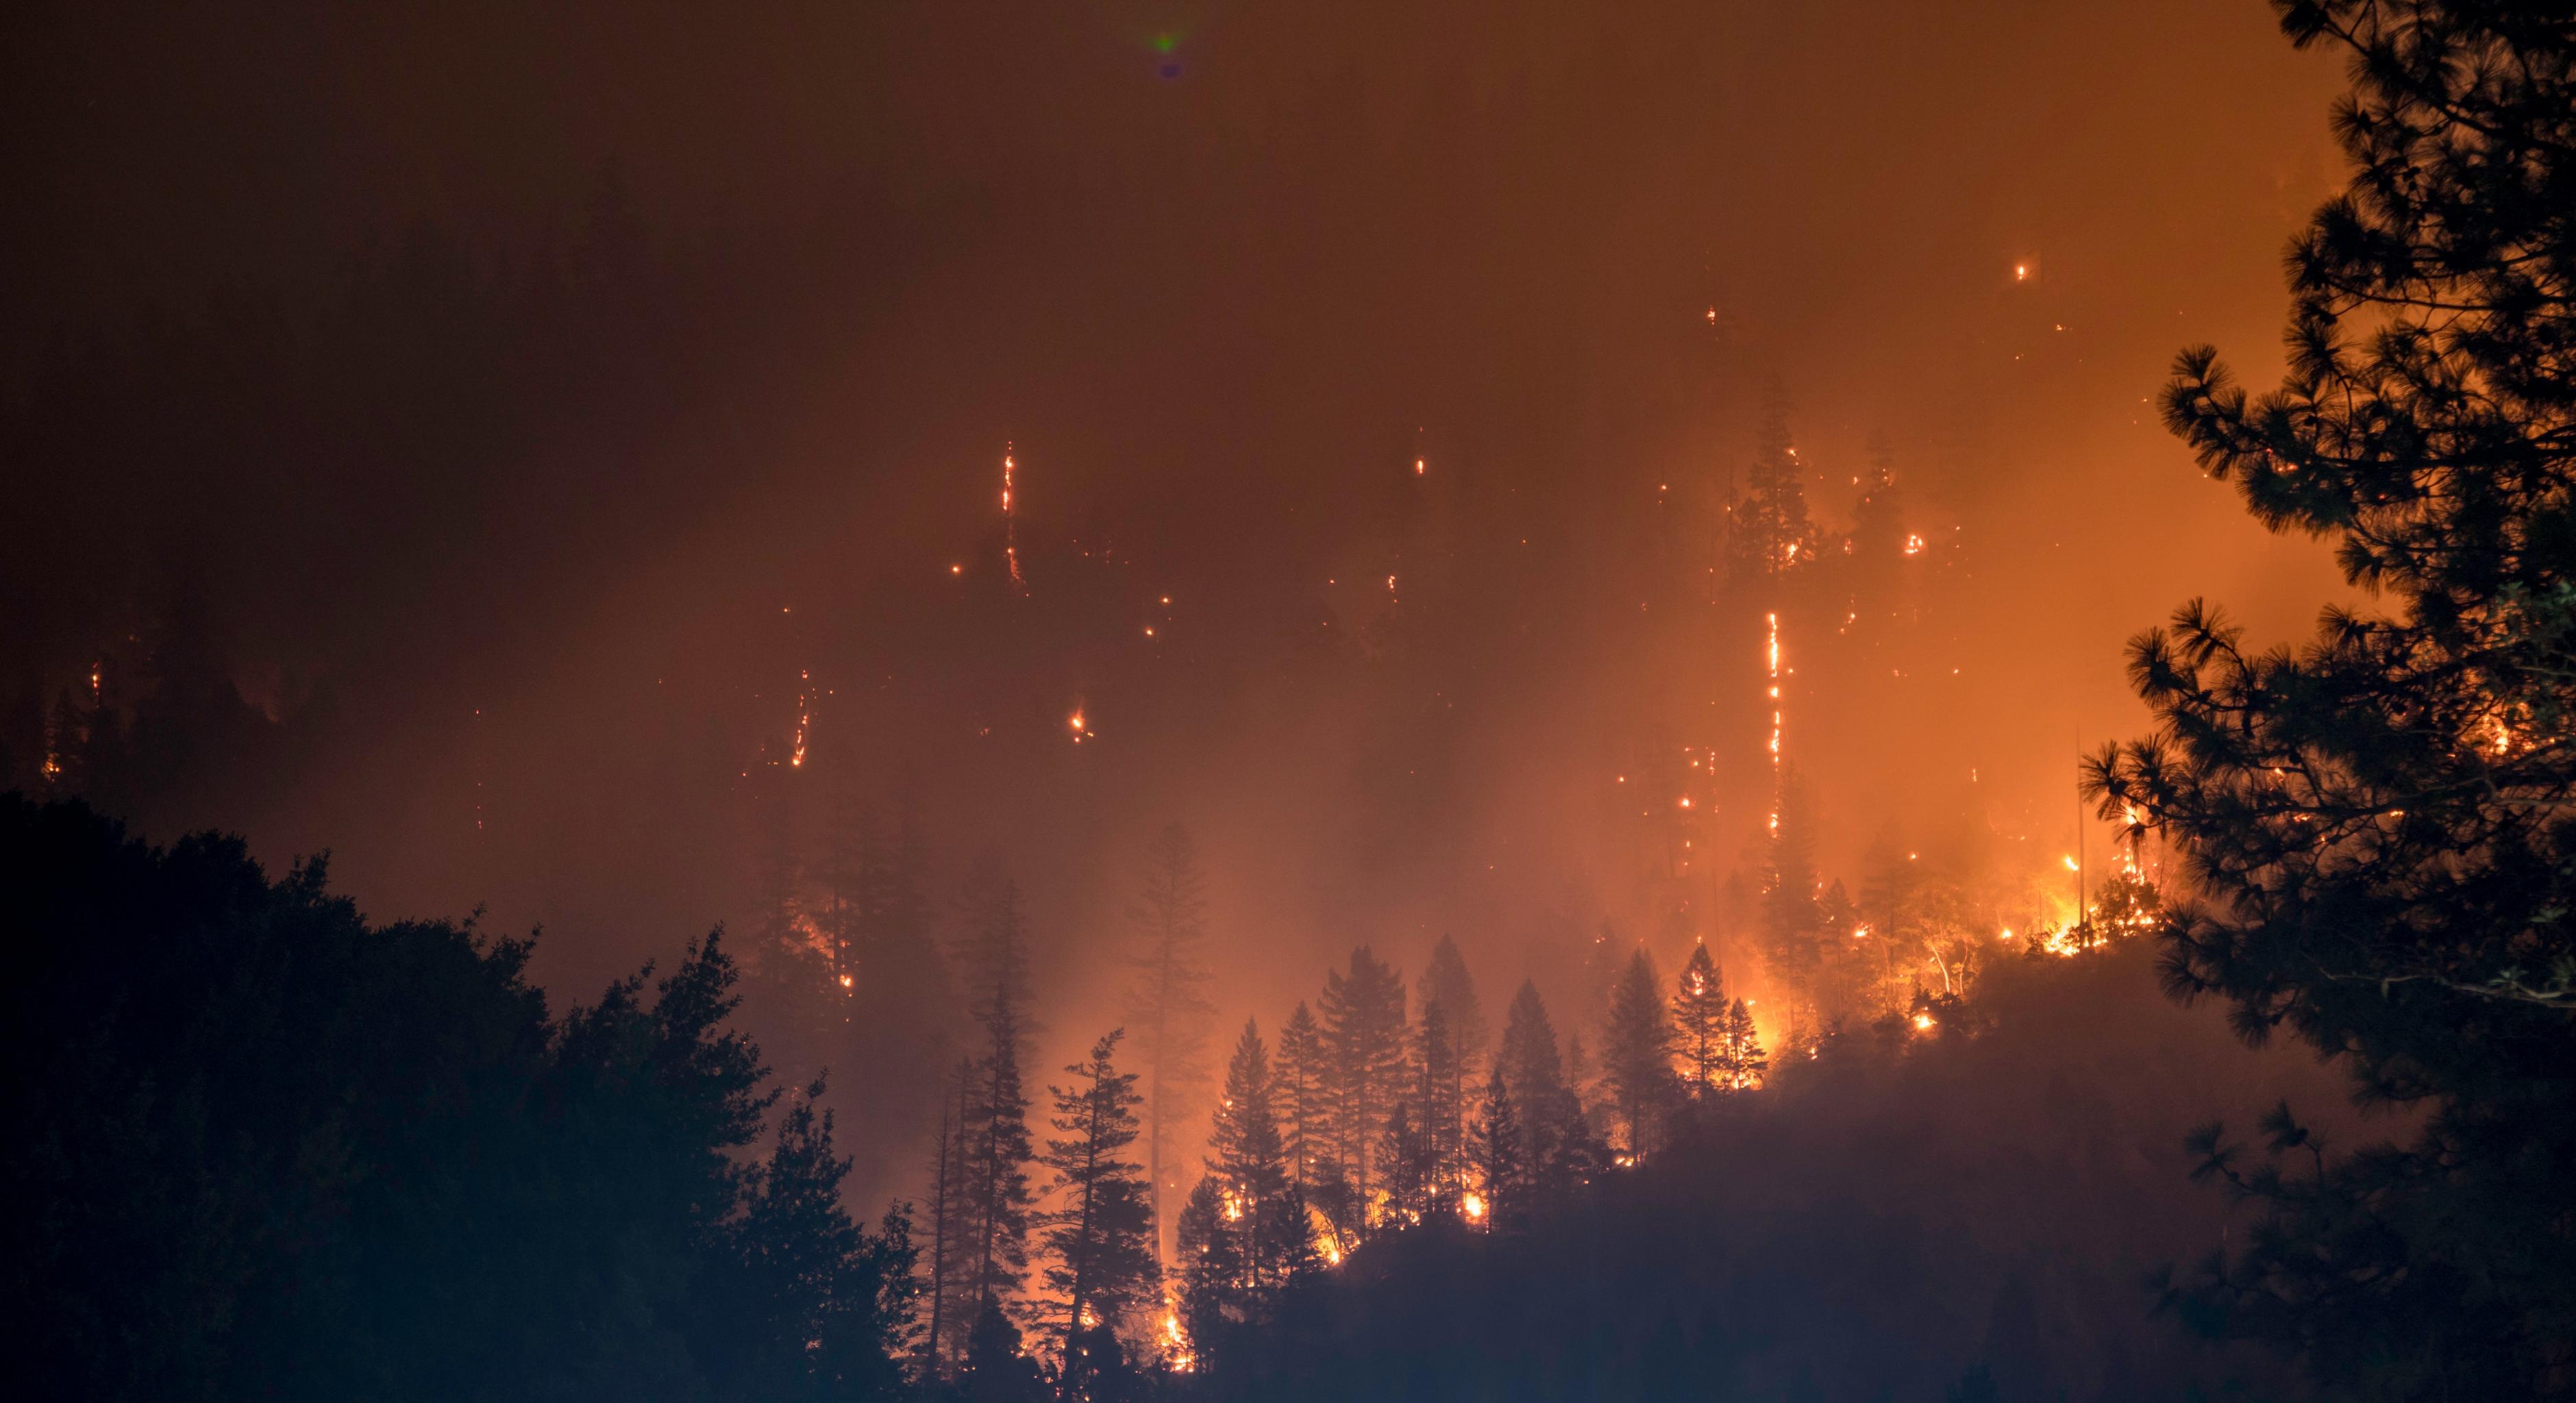 Brennende Bäume, Rauch und Funken bei einem Waldbrand im Klamath National Forest, USA.